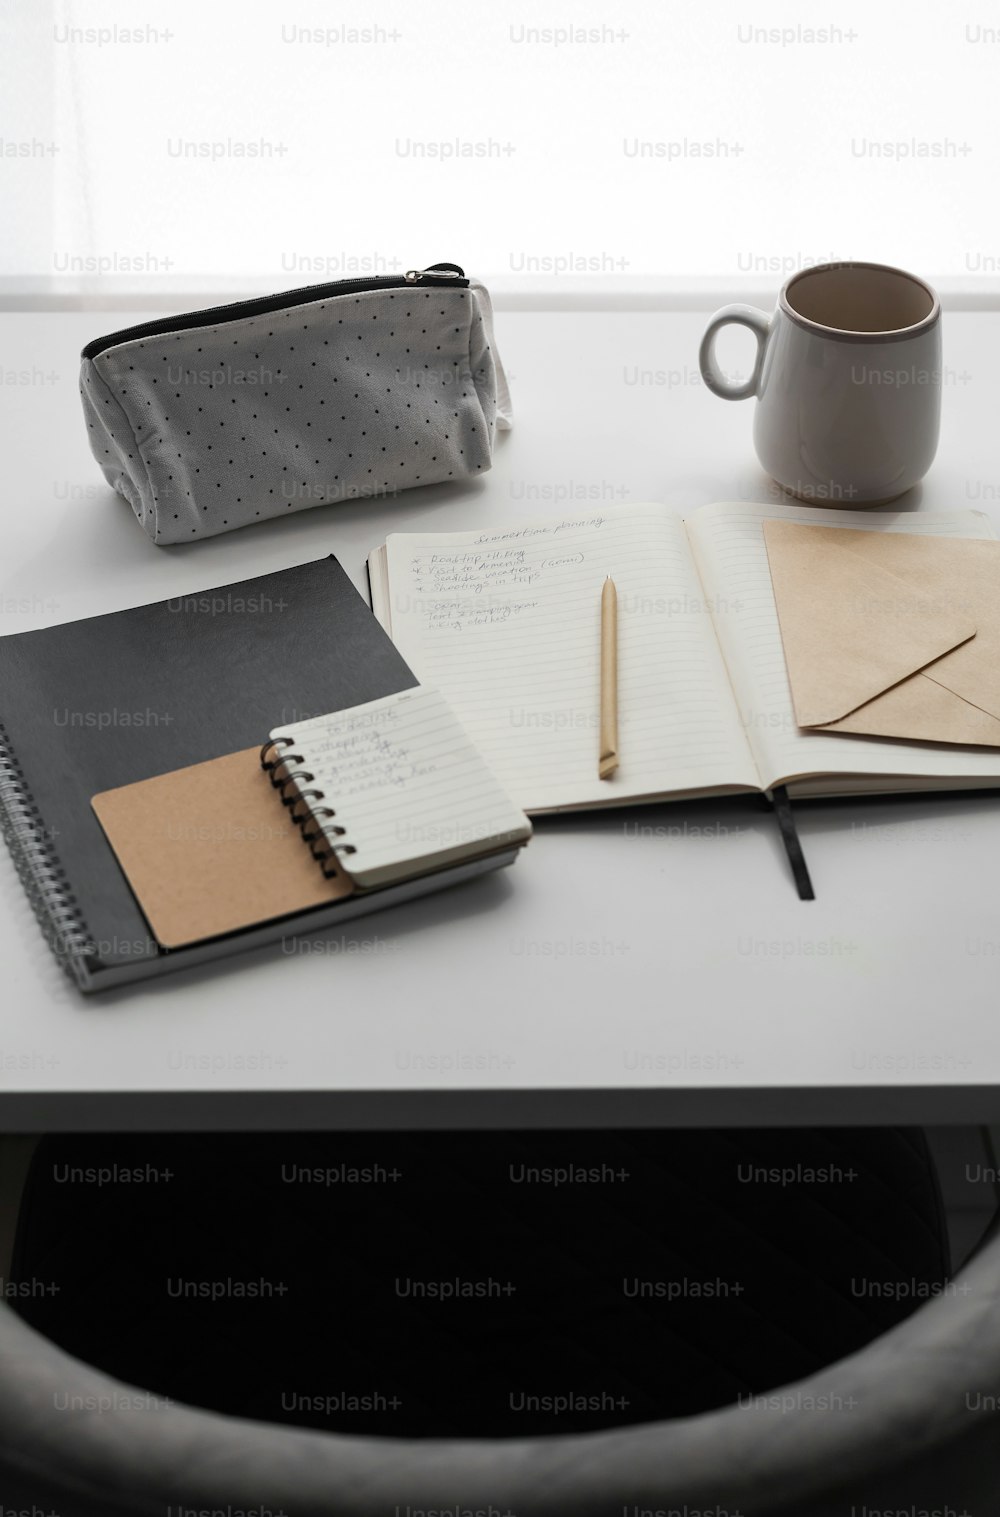 공책, 펜, 커피 한 잔이 놓인 책상